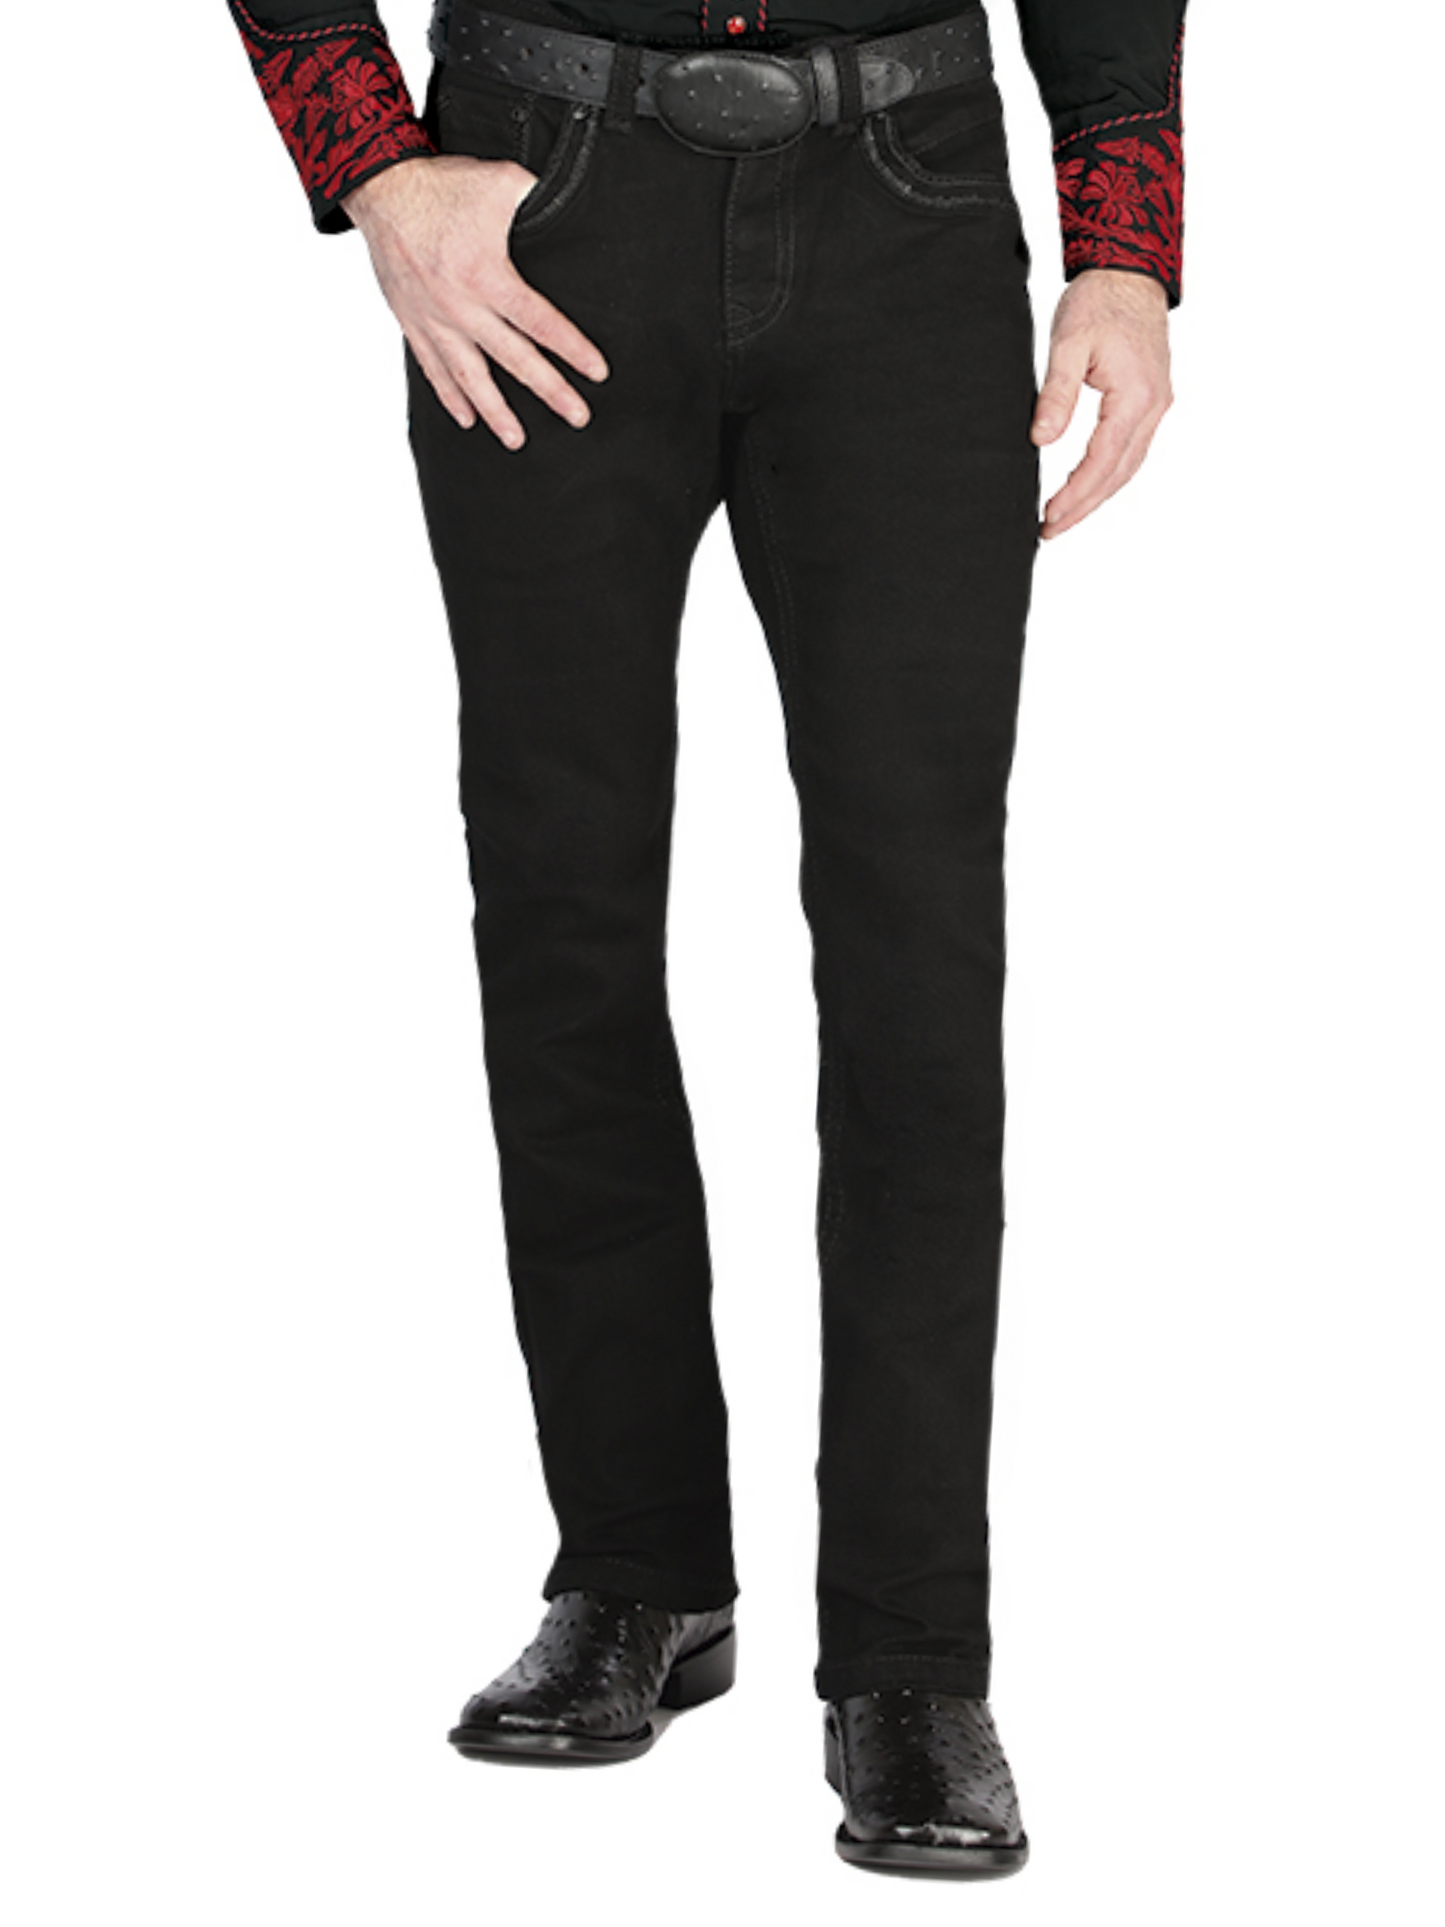 Black Boot Cut Denim Jeans for Men 'Centenario' - ID: 44831 Denim Jeans Centenario